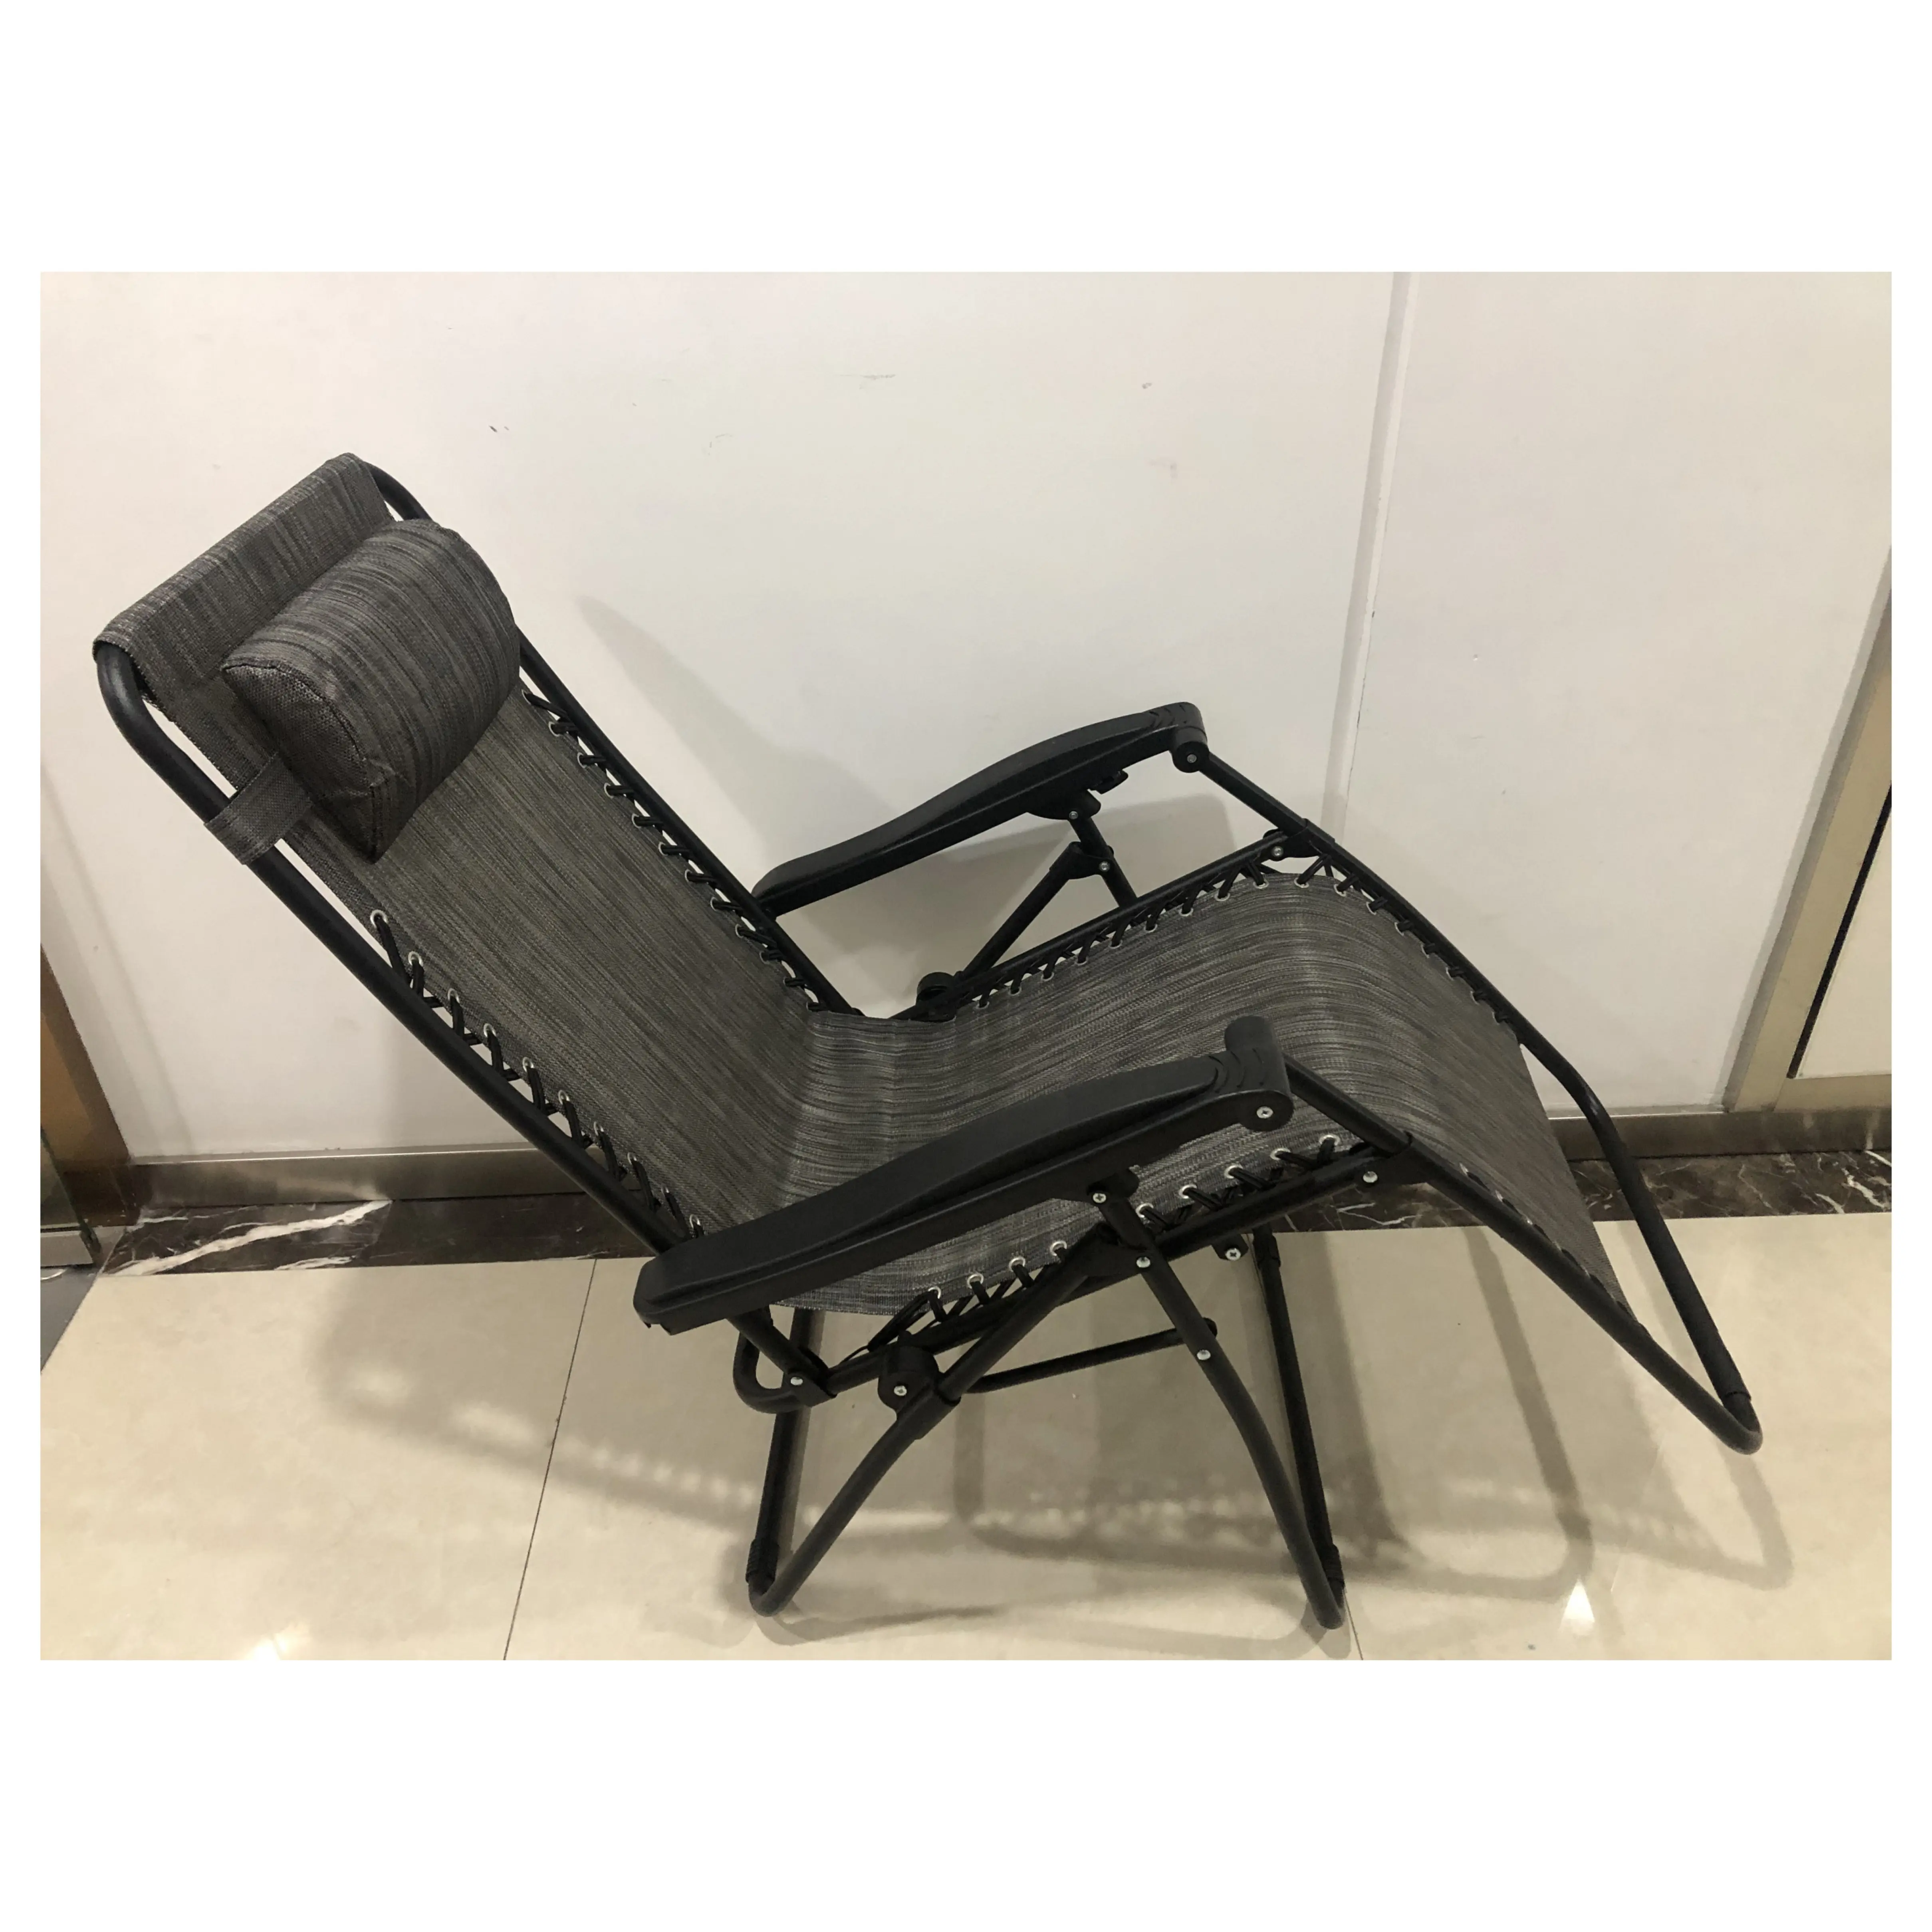 Açık kamp katlanır katlanabilir Recliner şezlong bahçe sıfır yerçekimi sandalye yastık ve bardak tutucu-2 Set